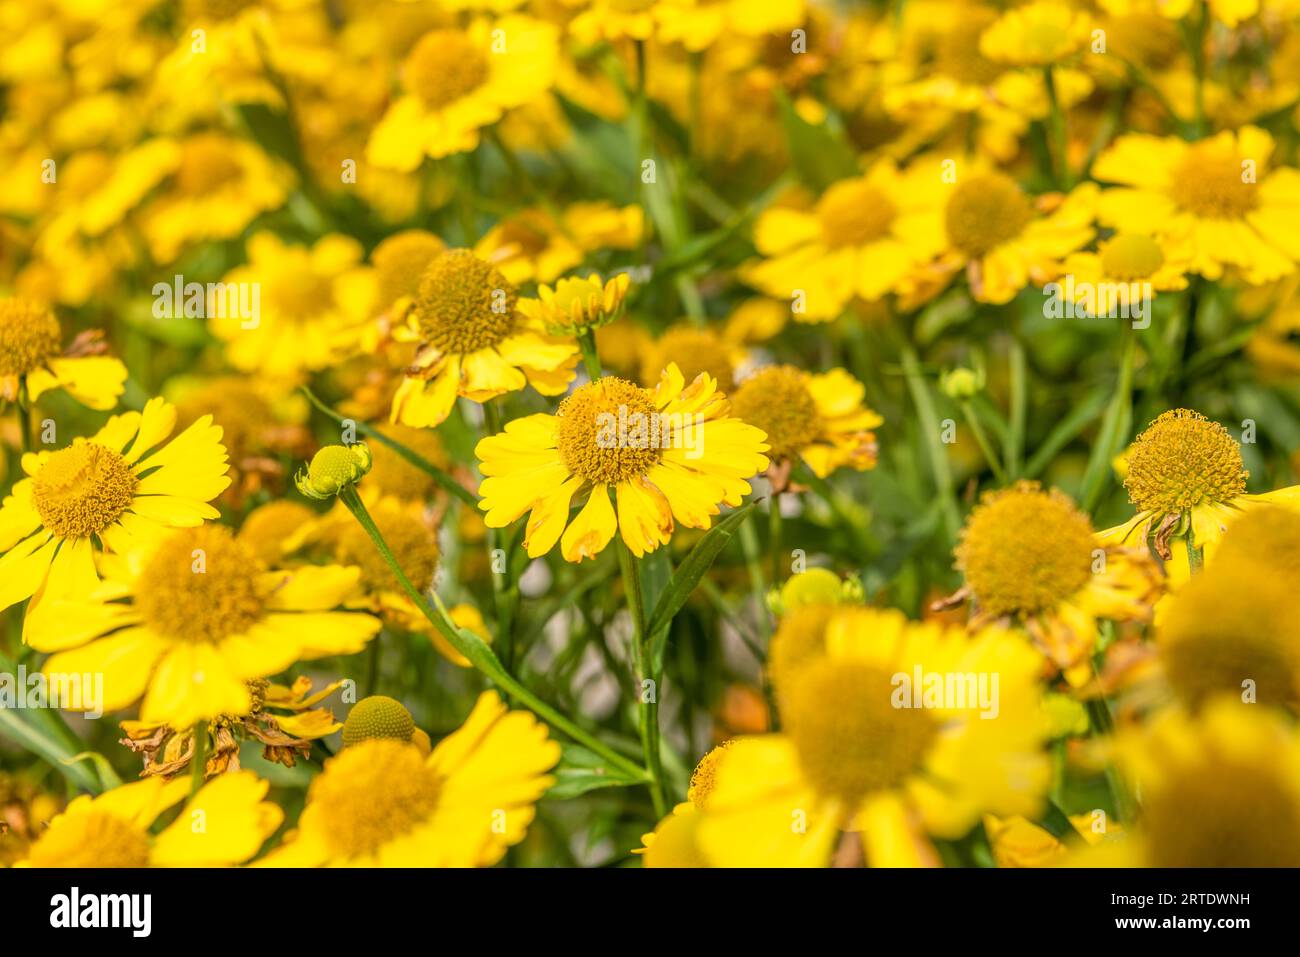 Selektiv fokussierter Vollbild von gelb blühenden Heliumblüten. Fokussieren Sie den mittleren Teil des Fotos. Garten, Cottage, ländlich. Stockfoto